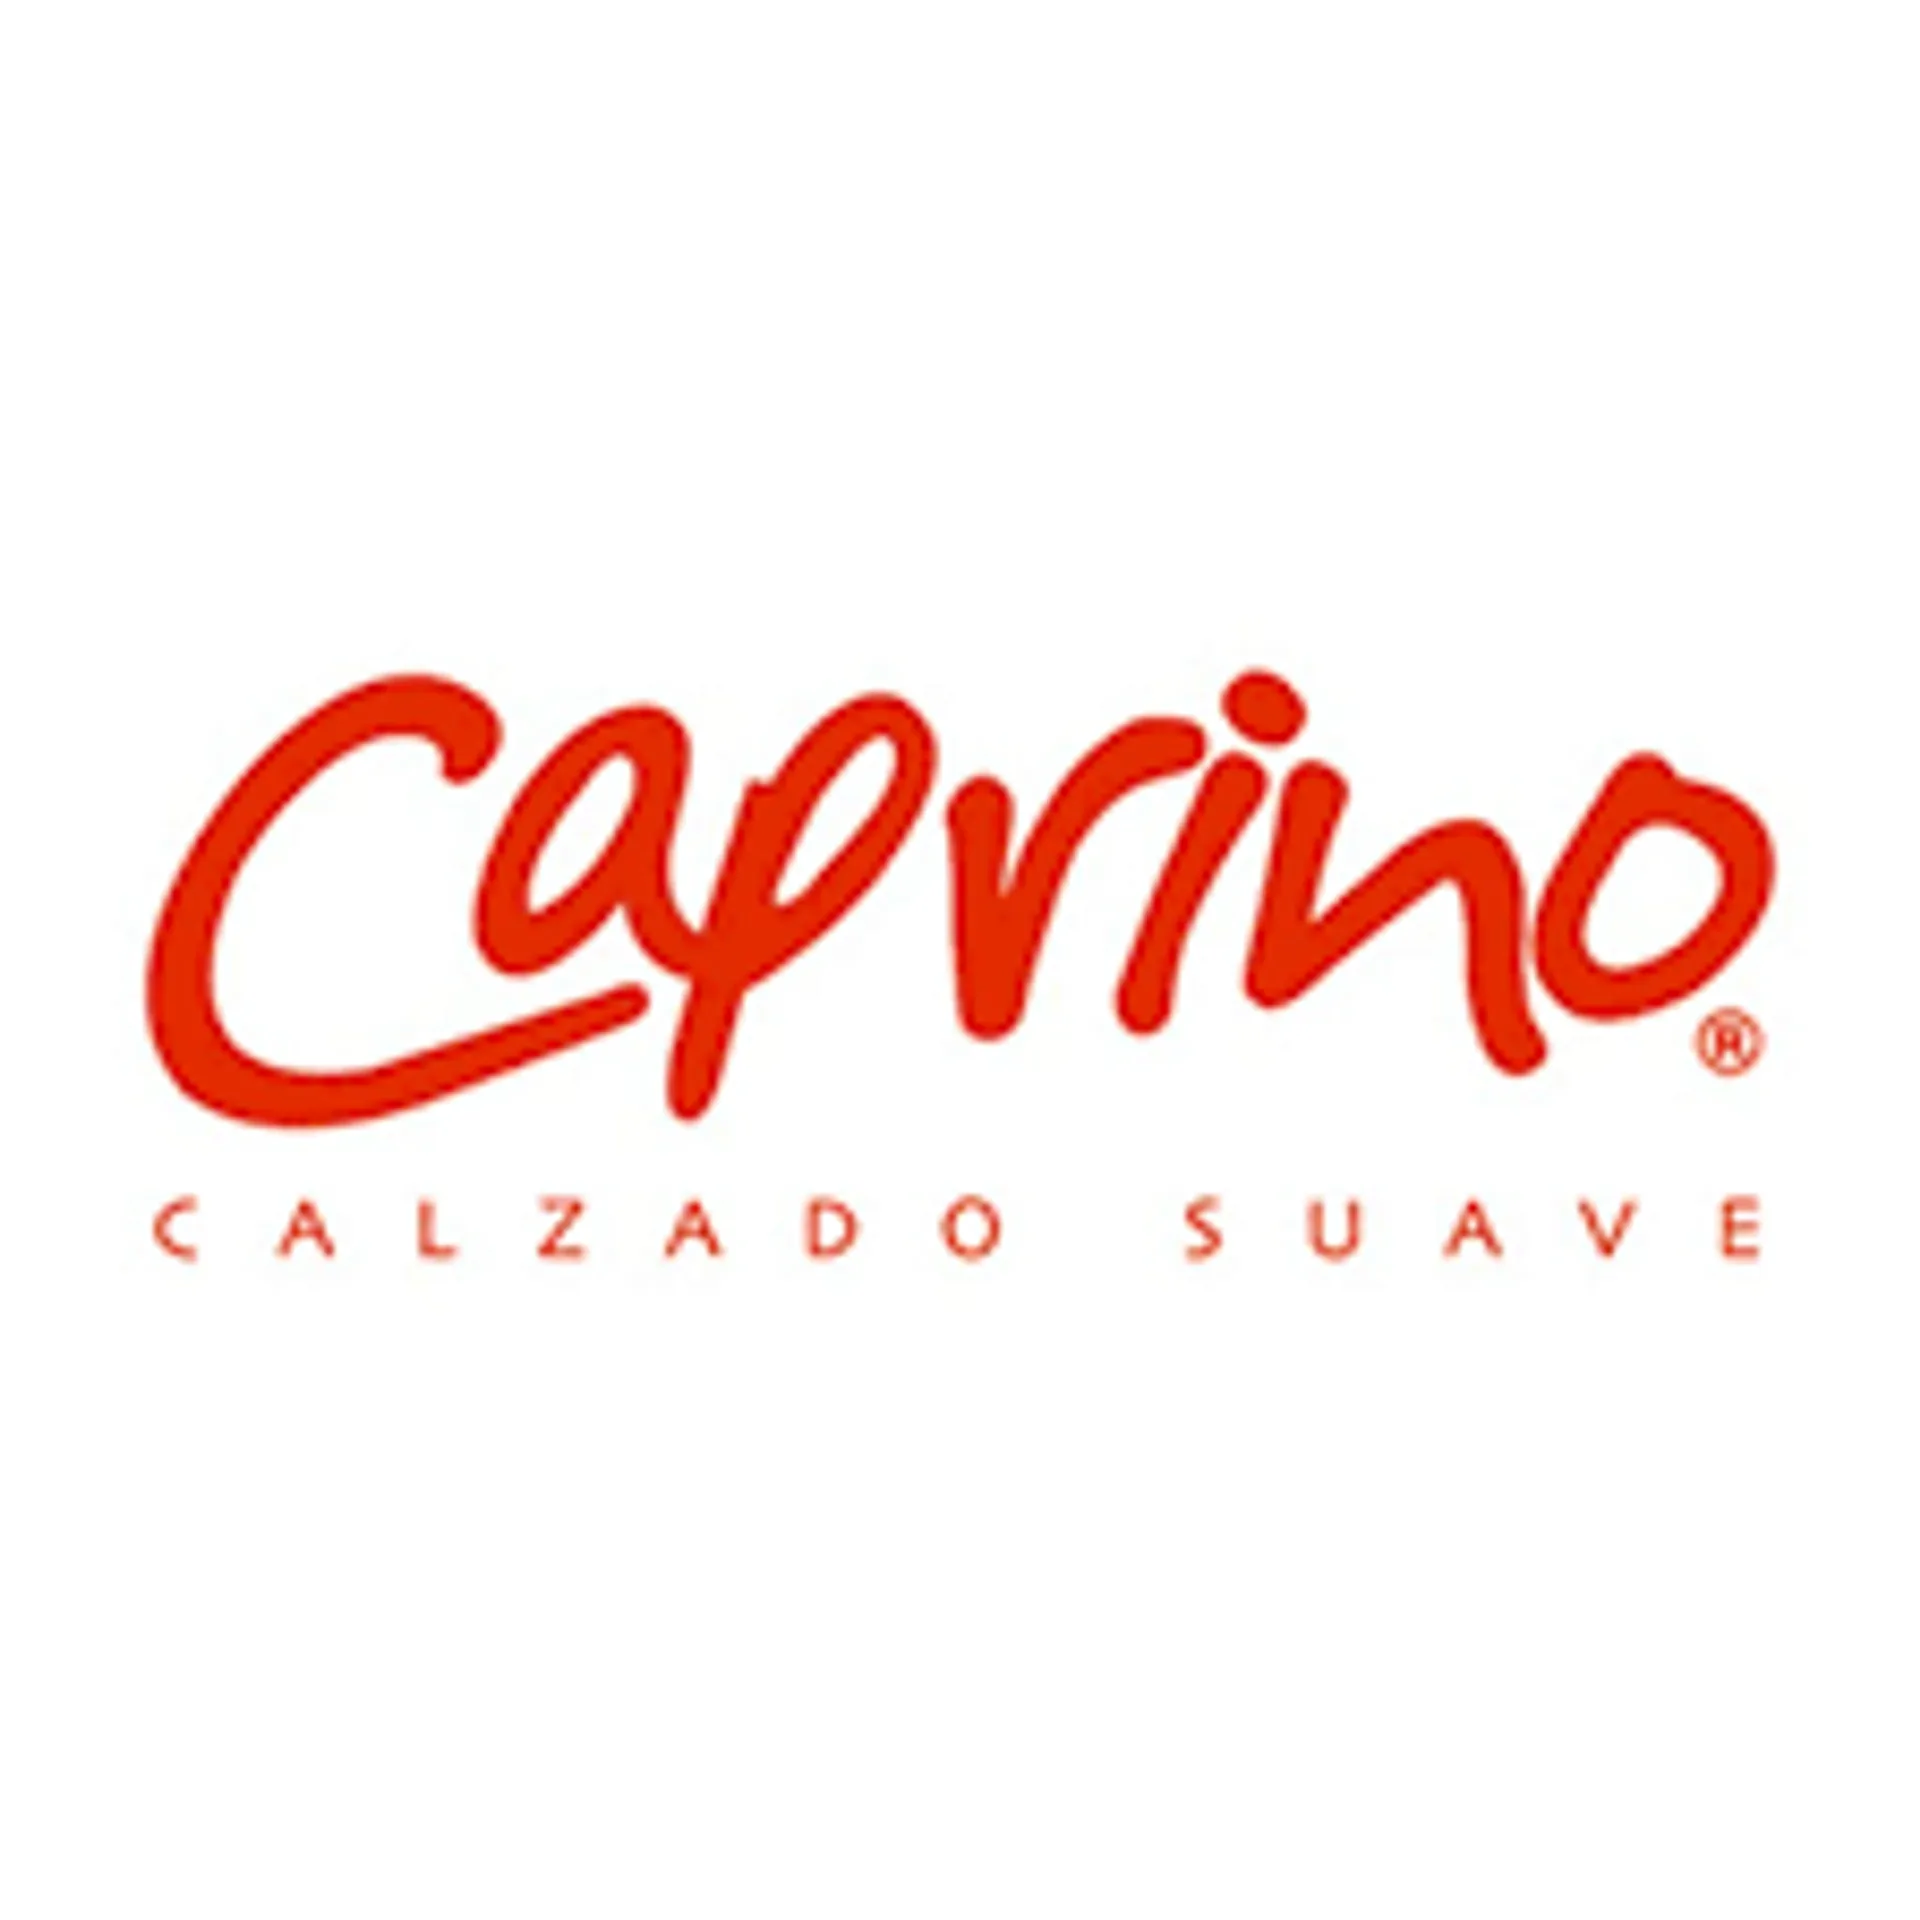 CALZADO CAPRINO logo de catálogo